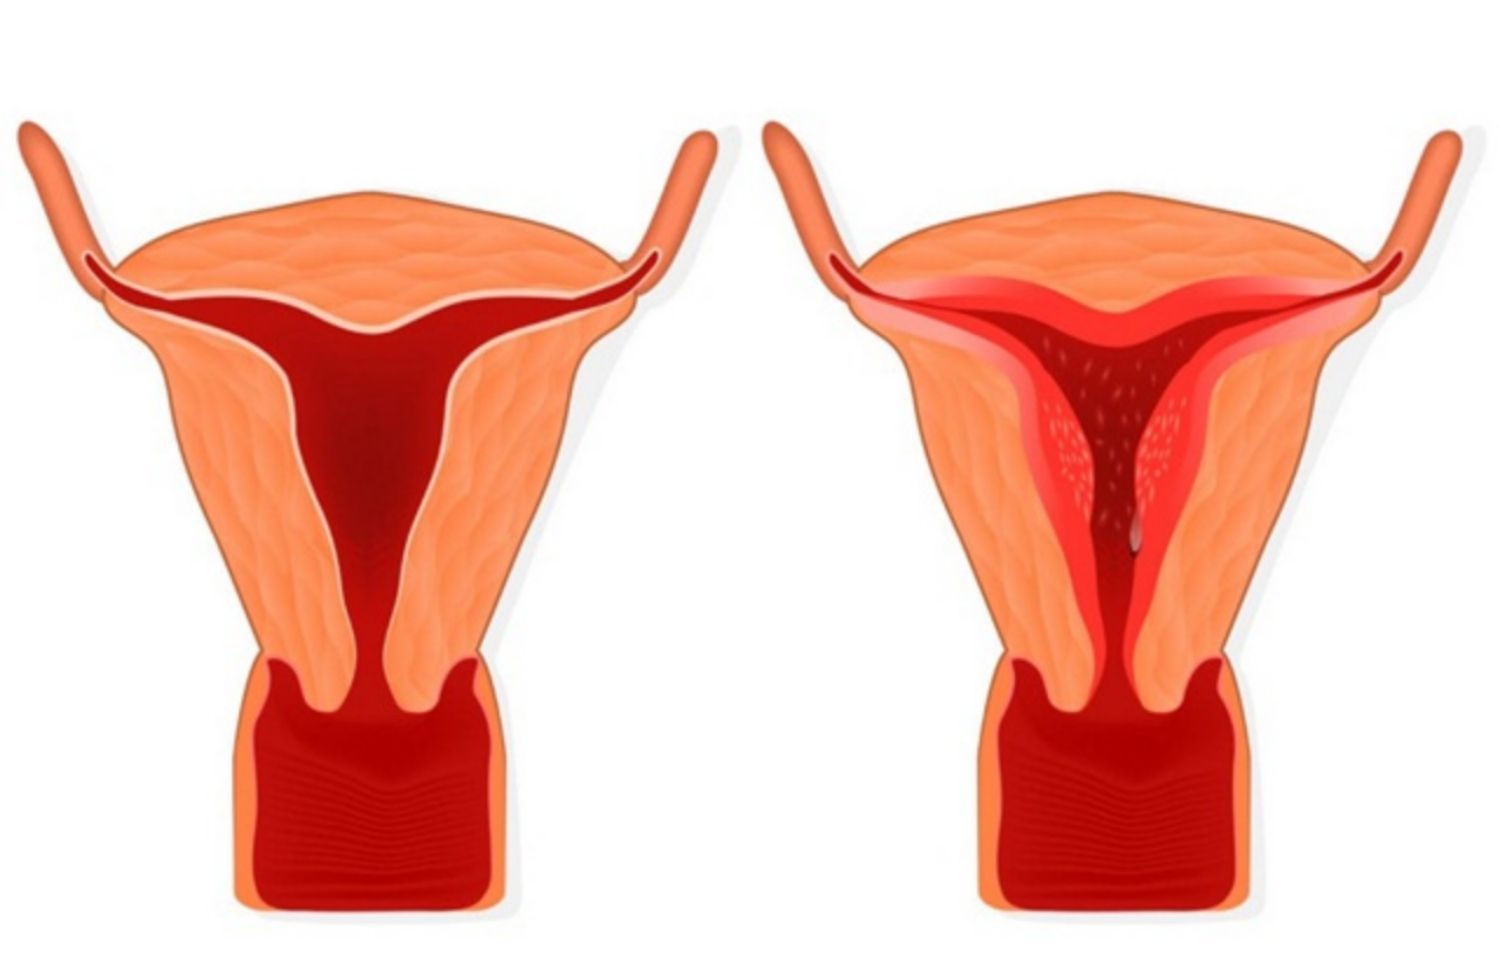 Tử cung bình thường (bên trái) và tăng sản nội mạc tử cung (bên phải)